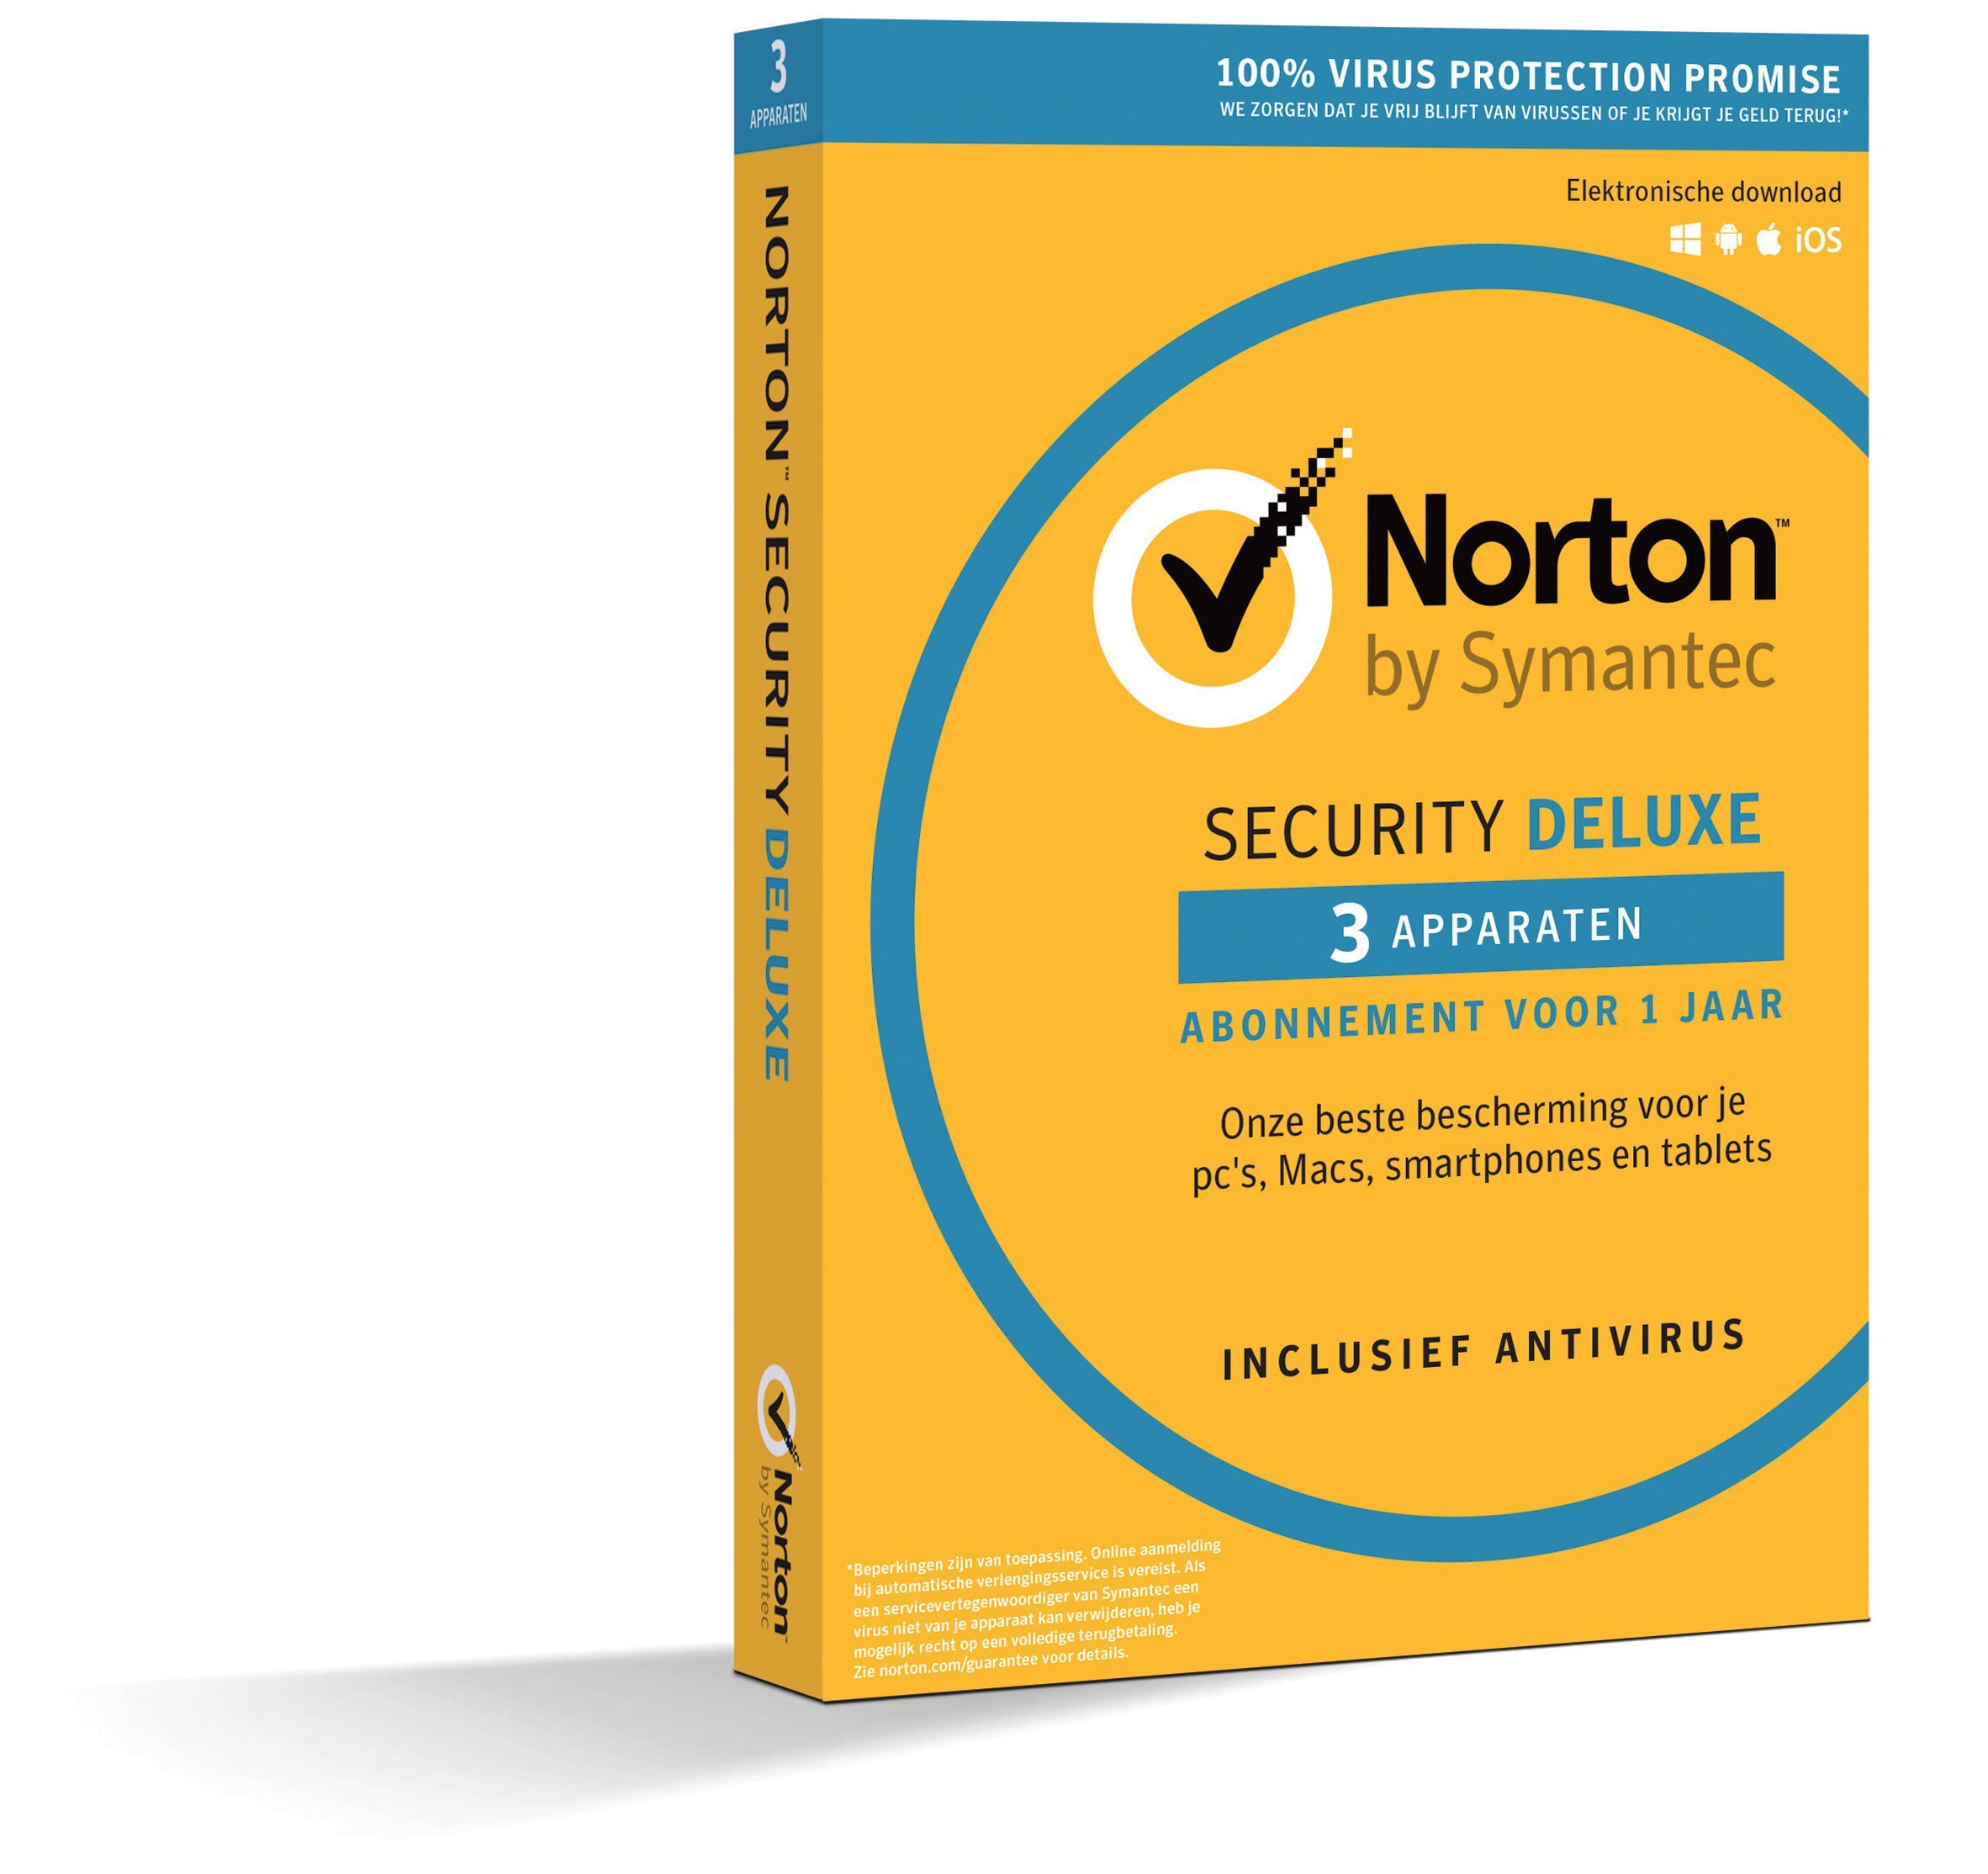 Norton Security Deluxe 3-Apparaten 1jaar 2019 - Antivirus inbegrepen - Windows | Mac | Android | iOS